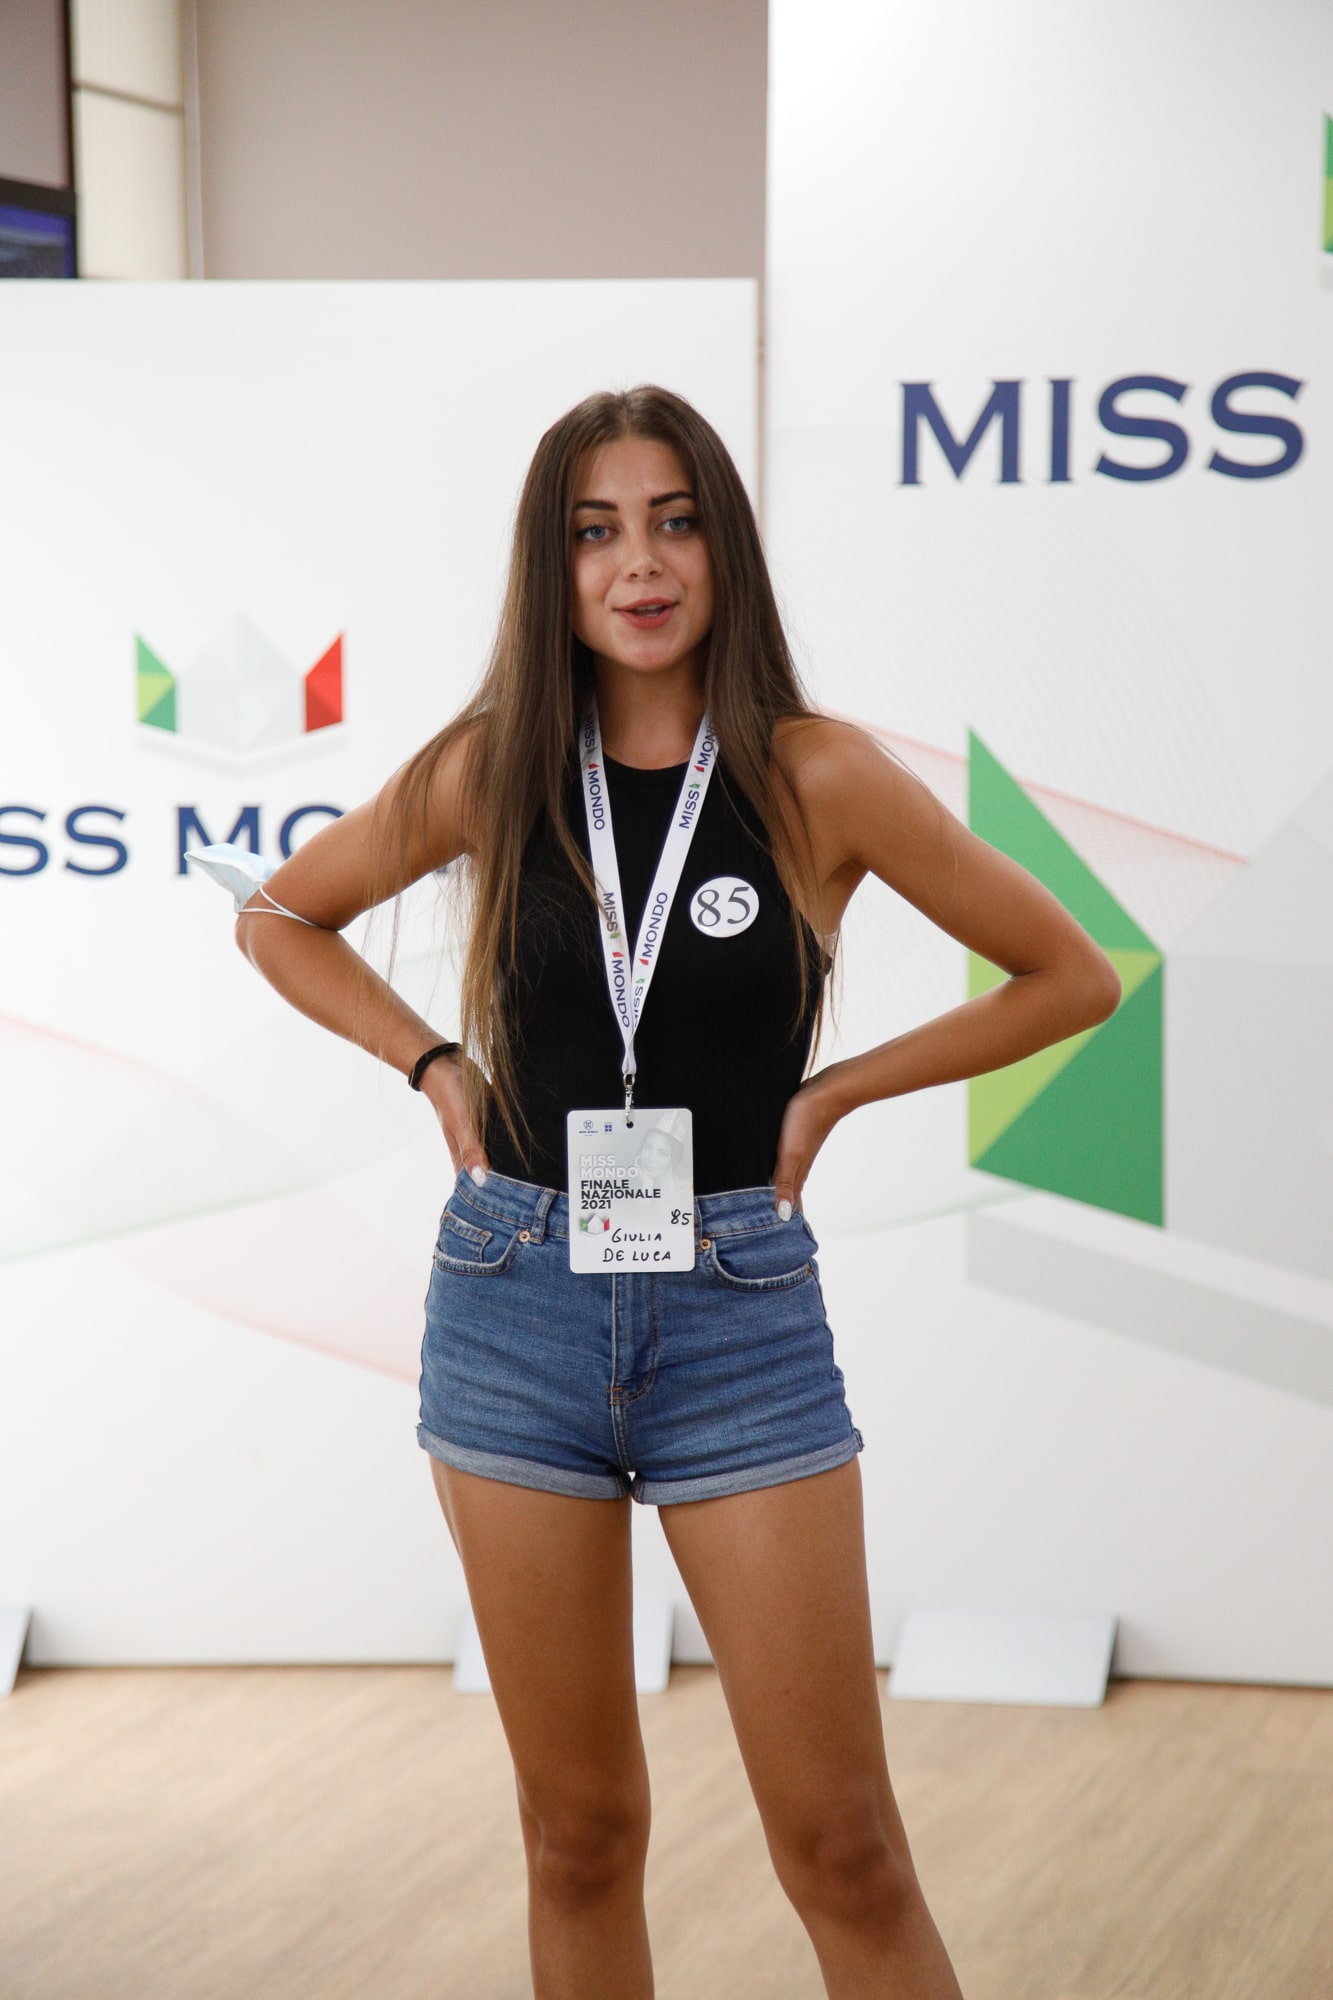 Finale nazione Miss Mondo Italia 2021 Audizione Talent 3 - 31